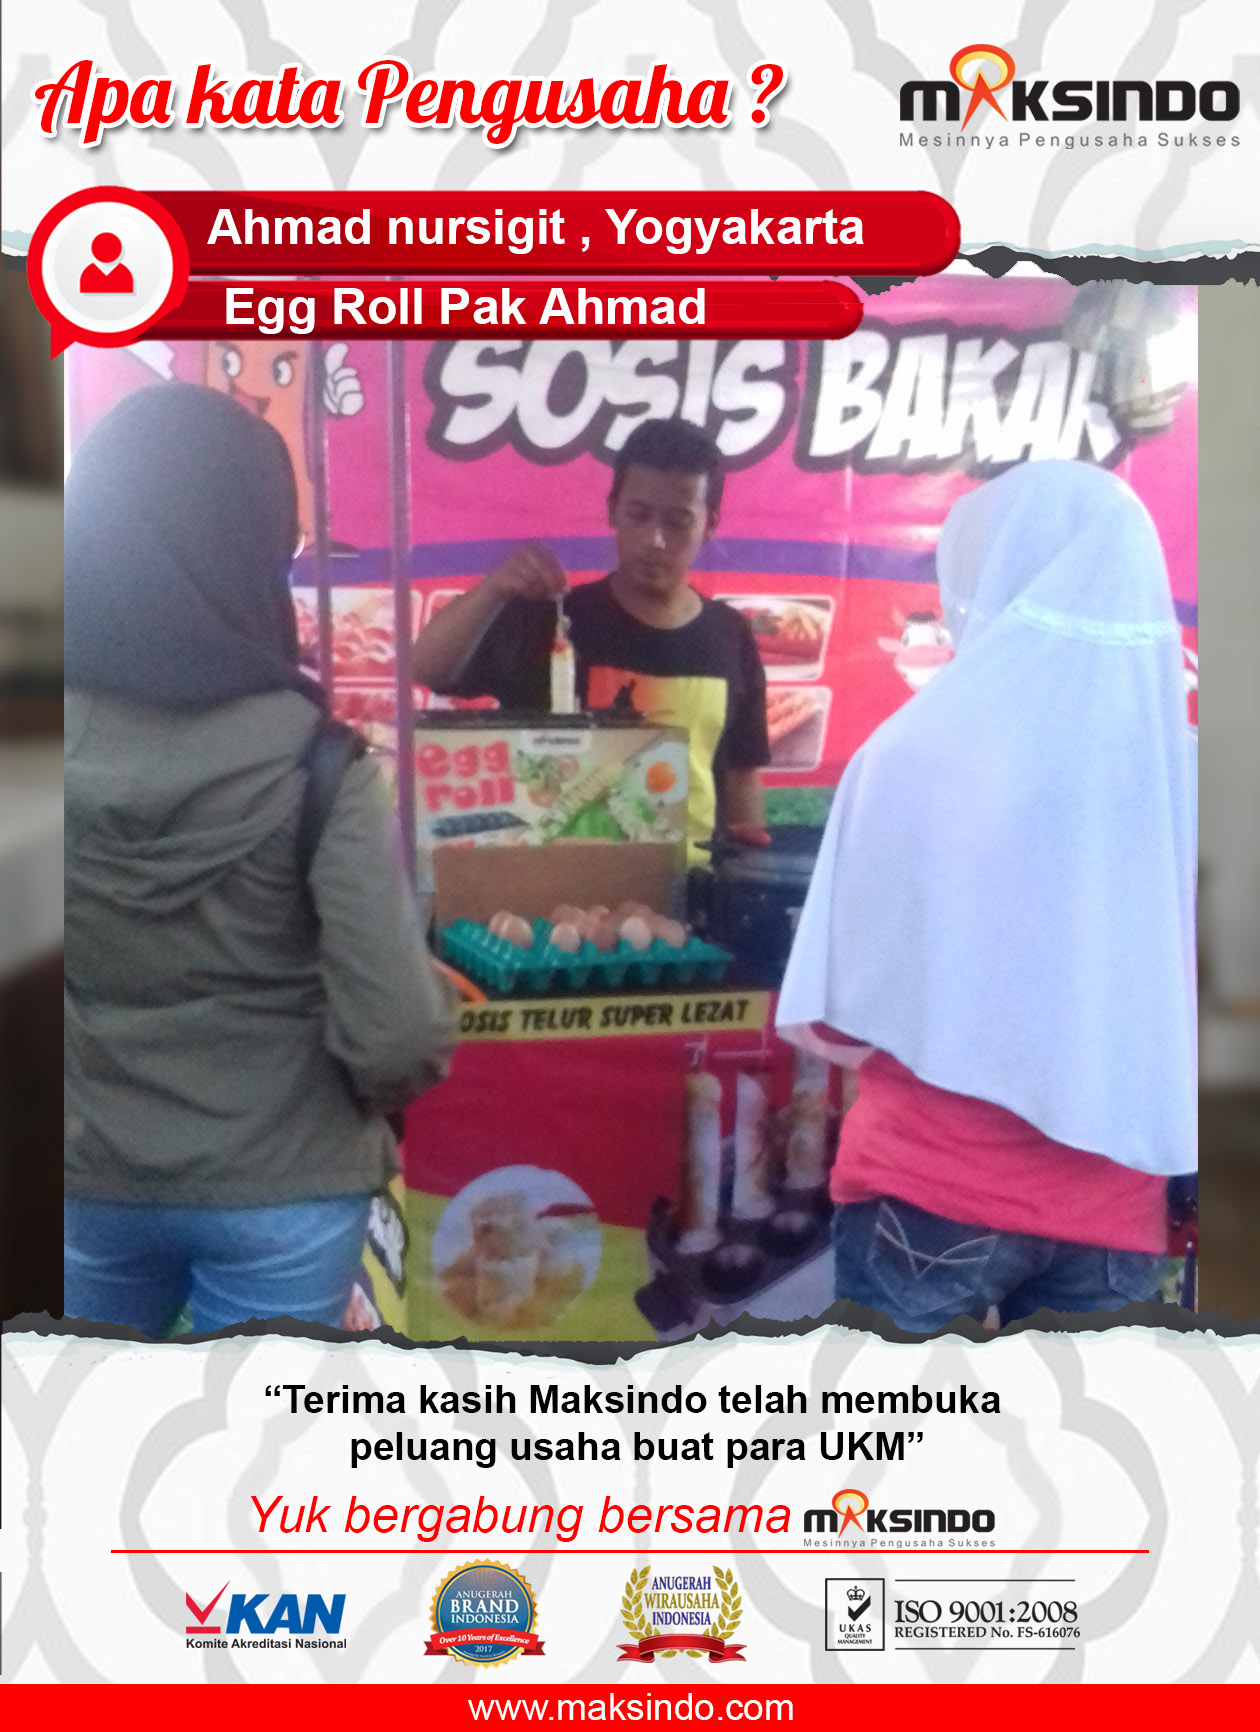 Egg Roll Pak Ahmad : Berkat mesin egg roll Maksindo membuka peluang usaha untuk para UKM